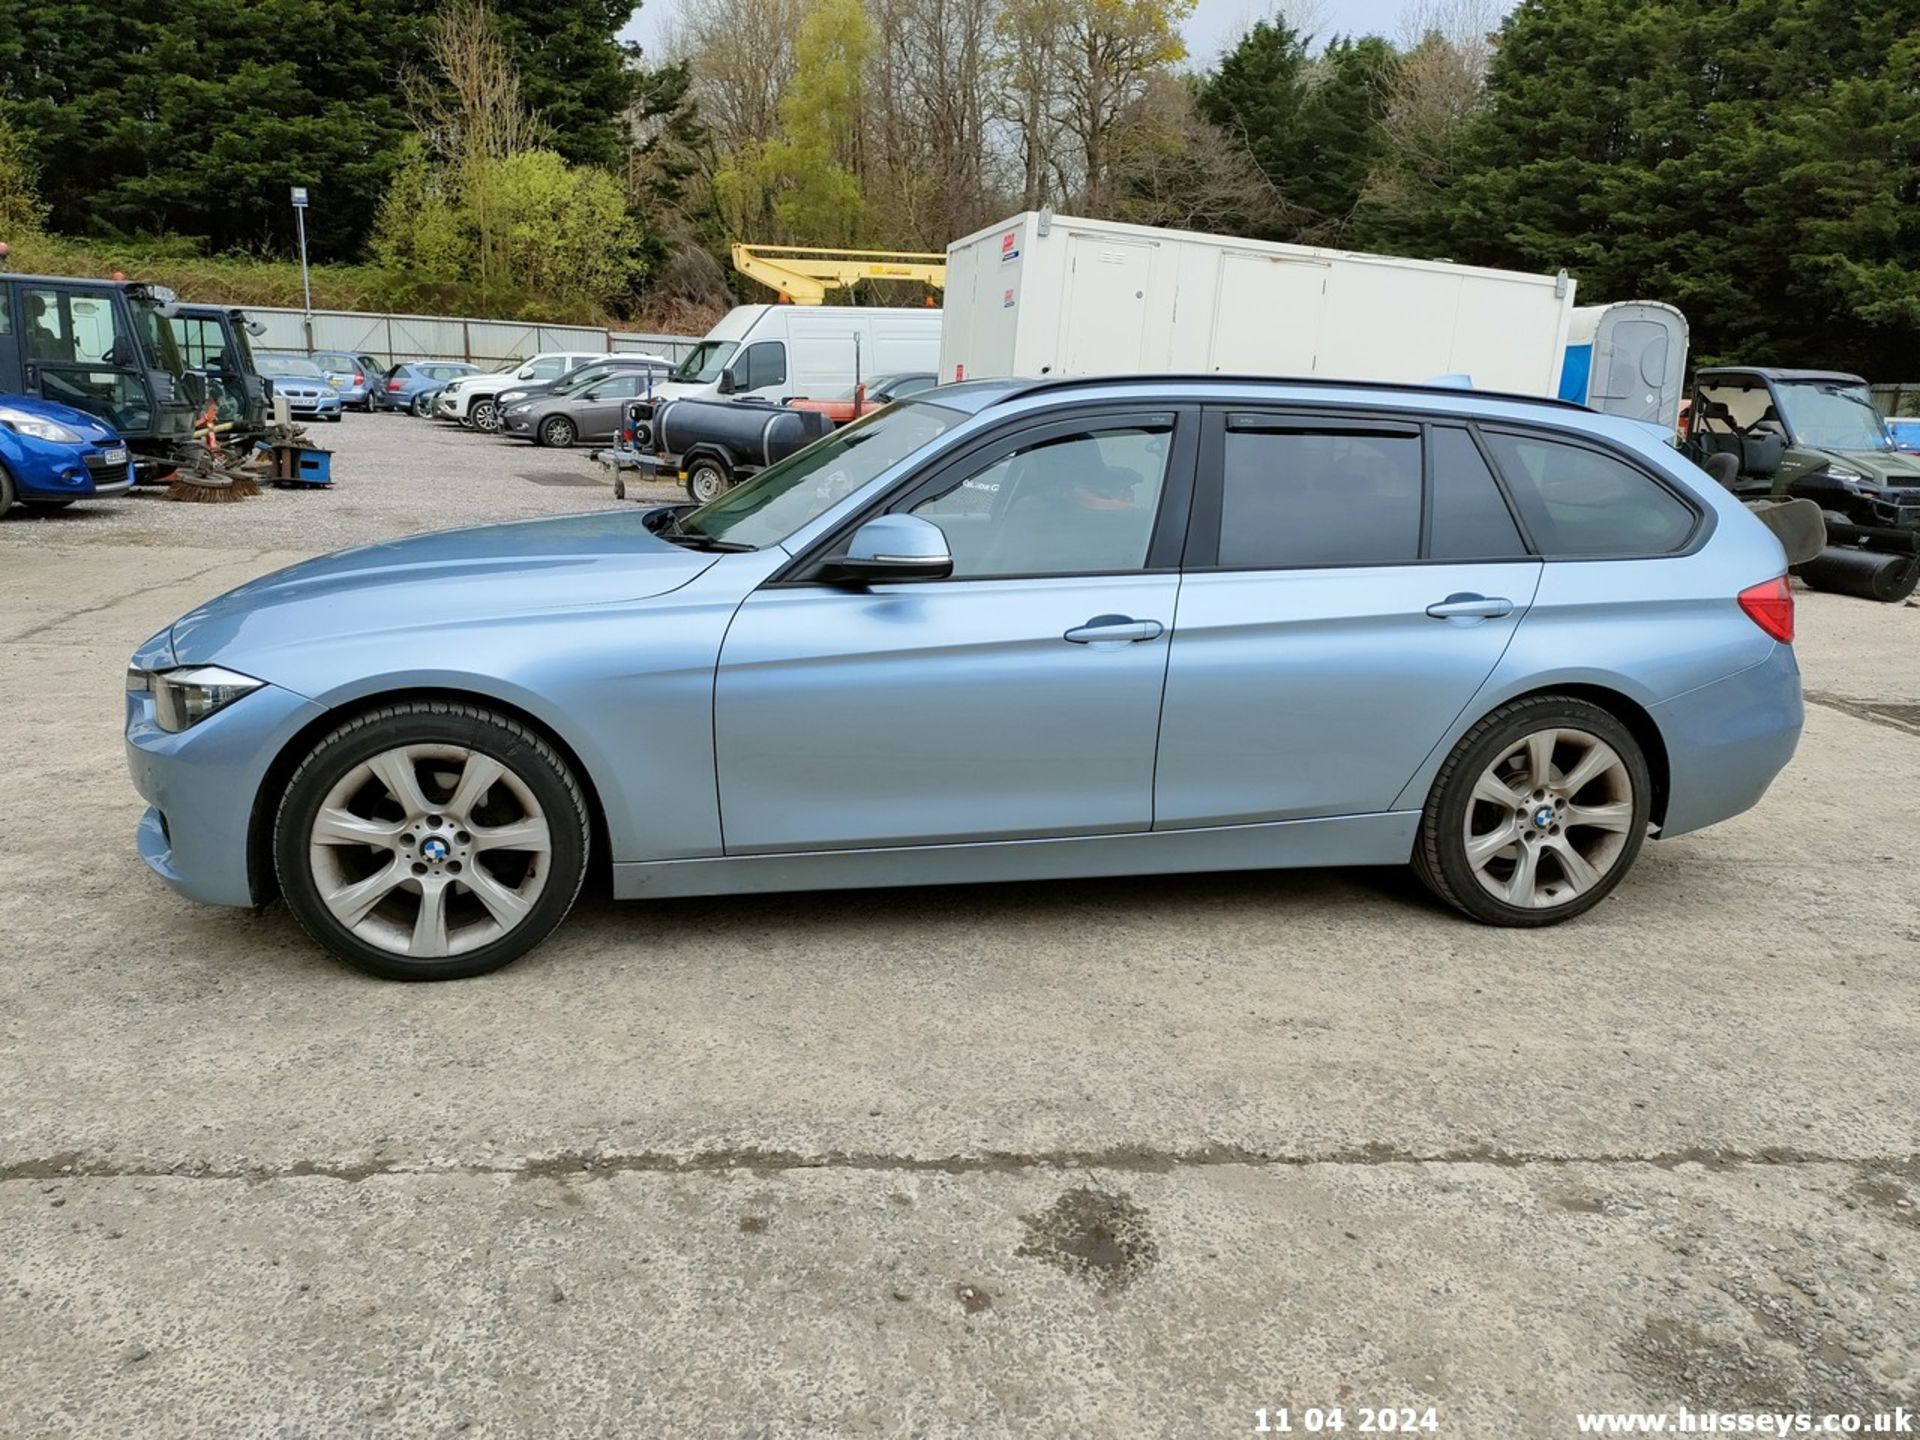 12/62 BMW 320D SE TOURING - 1995cc 5dr Estate (Blue, 174k) - Image 19 of 70